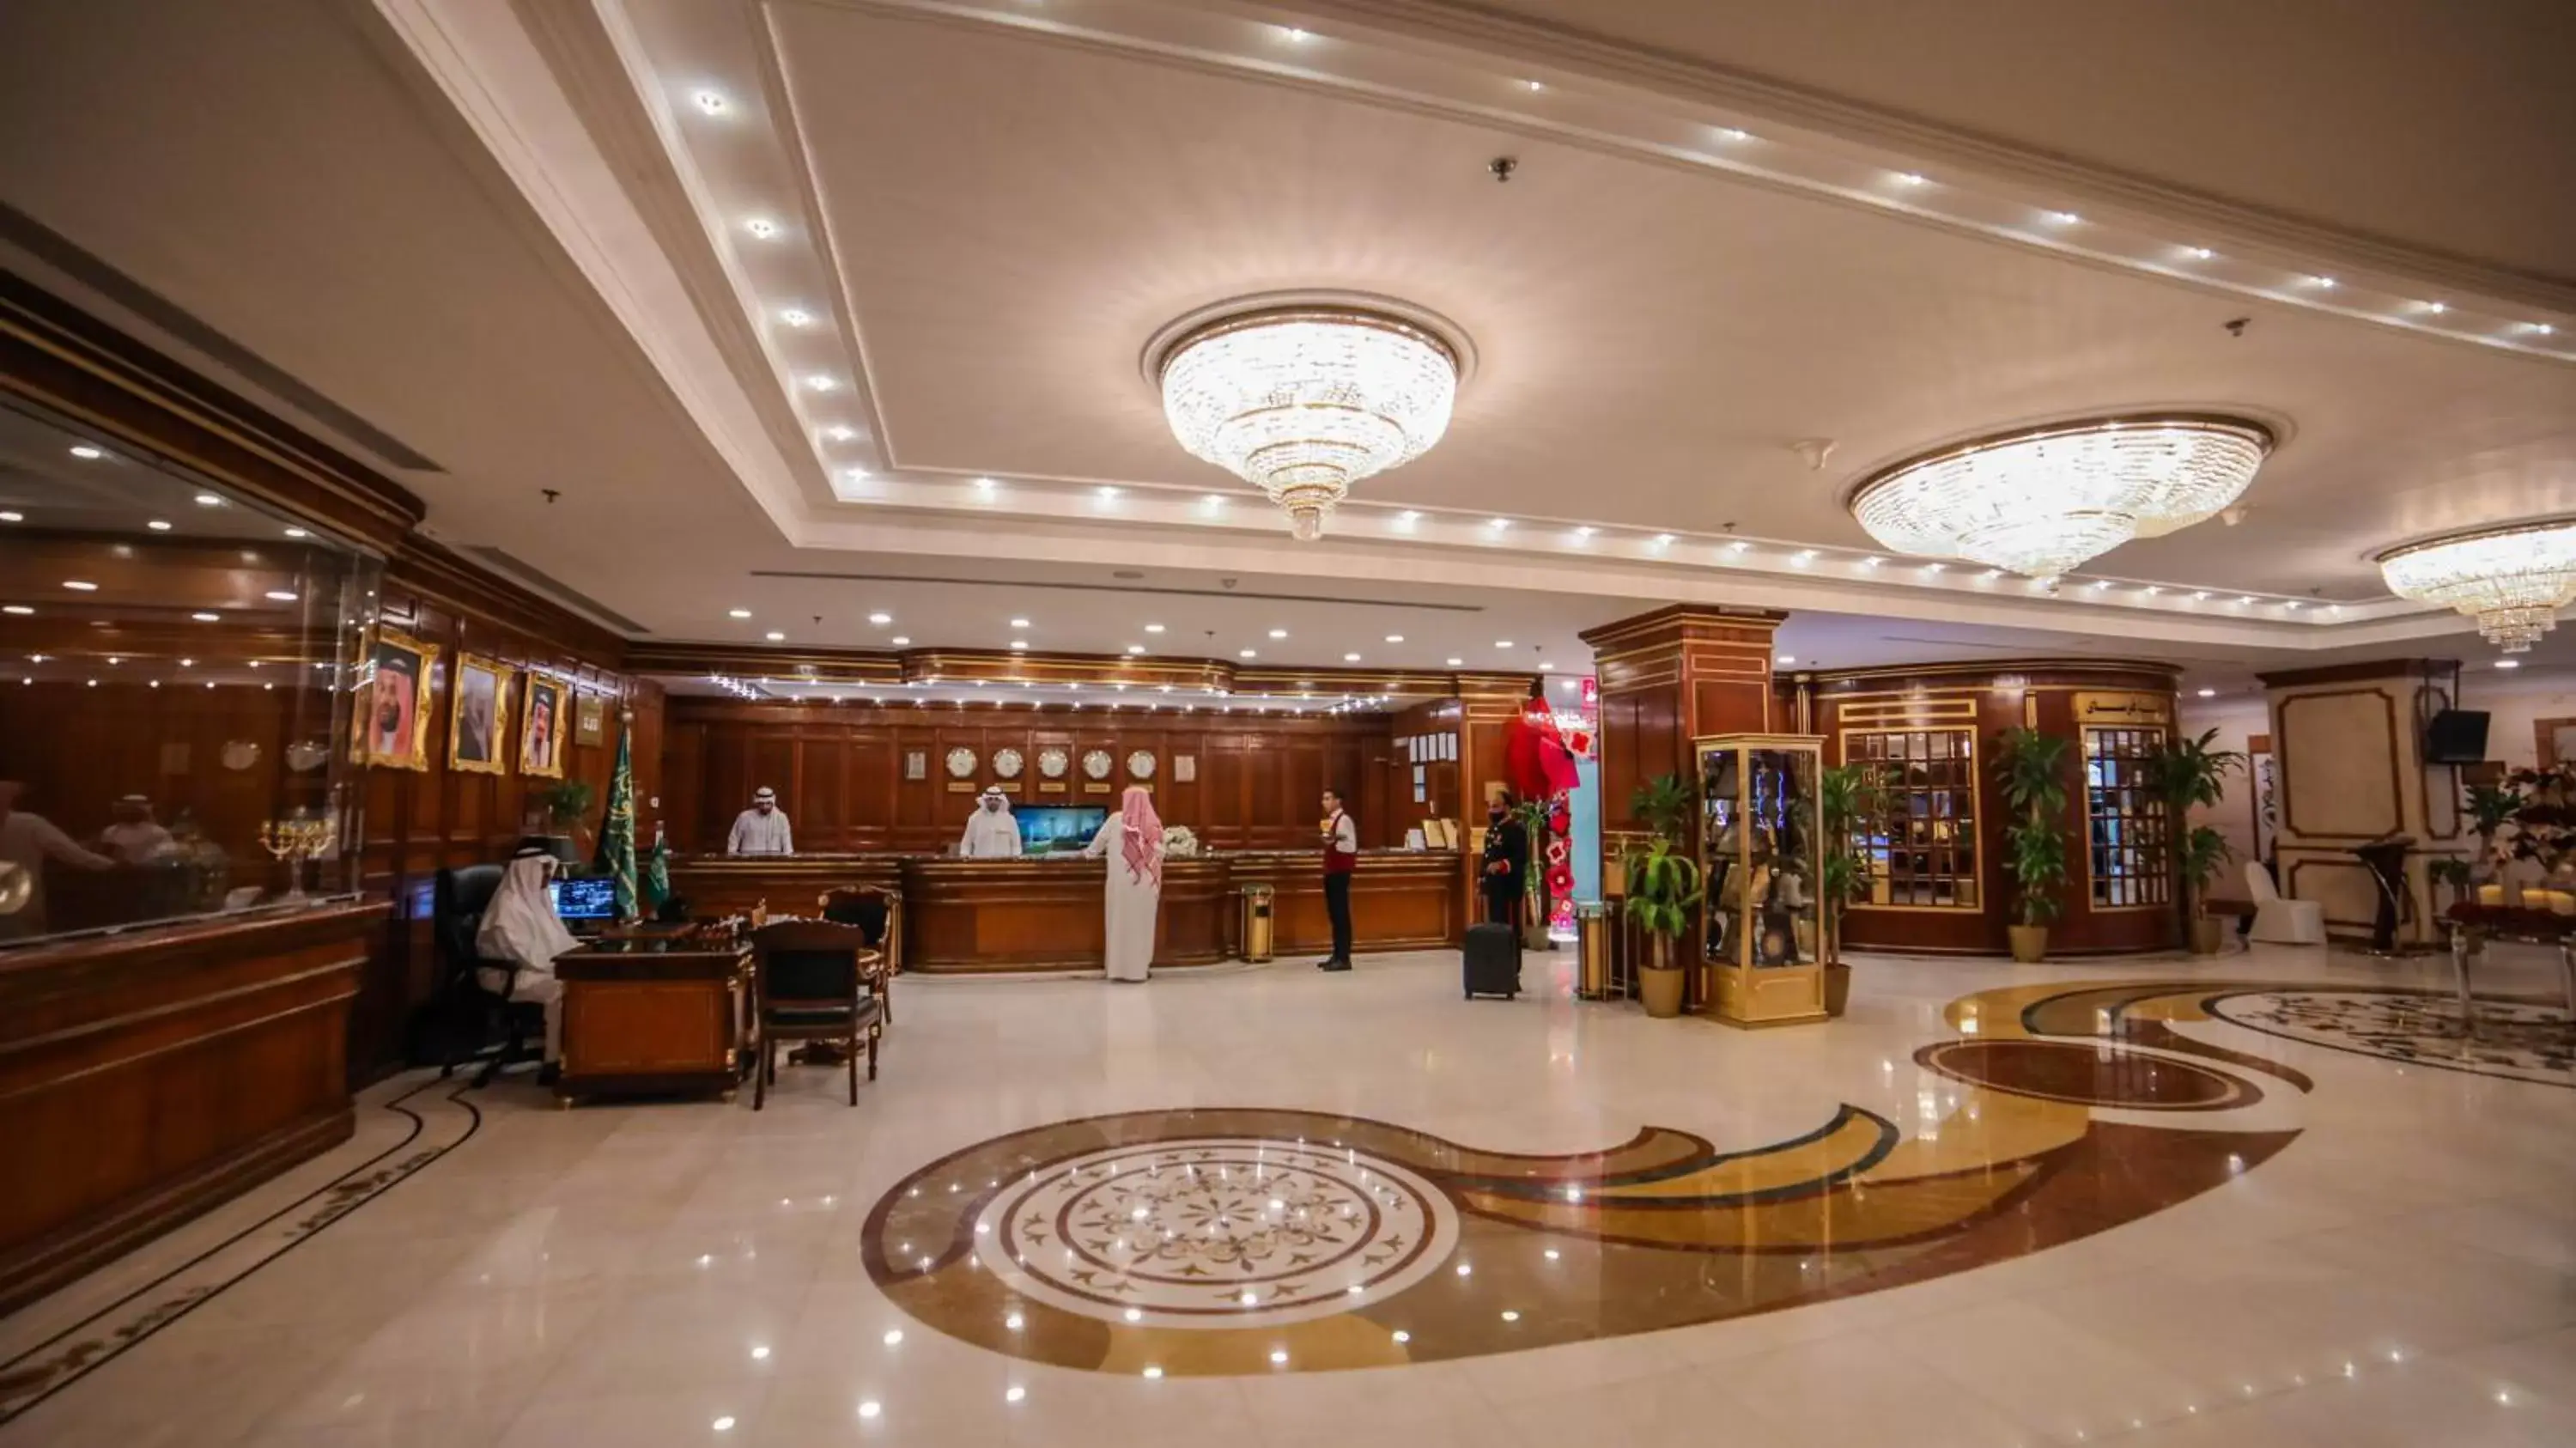 Lobby or reception in Casablanca Hotel Jeddah